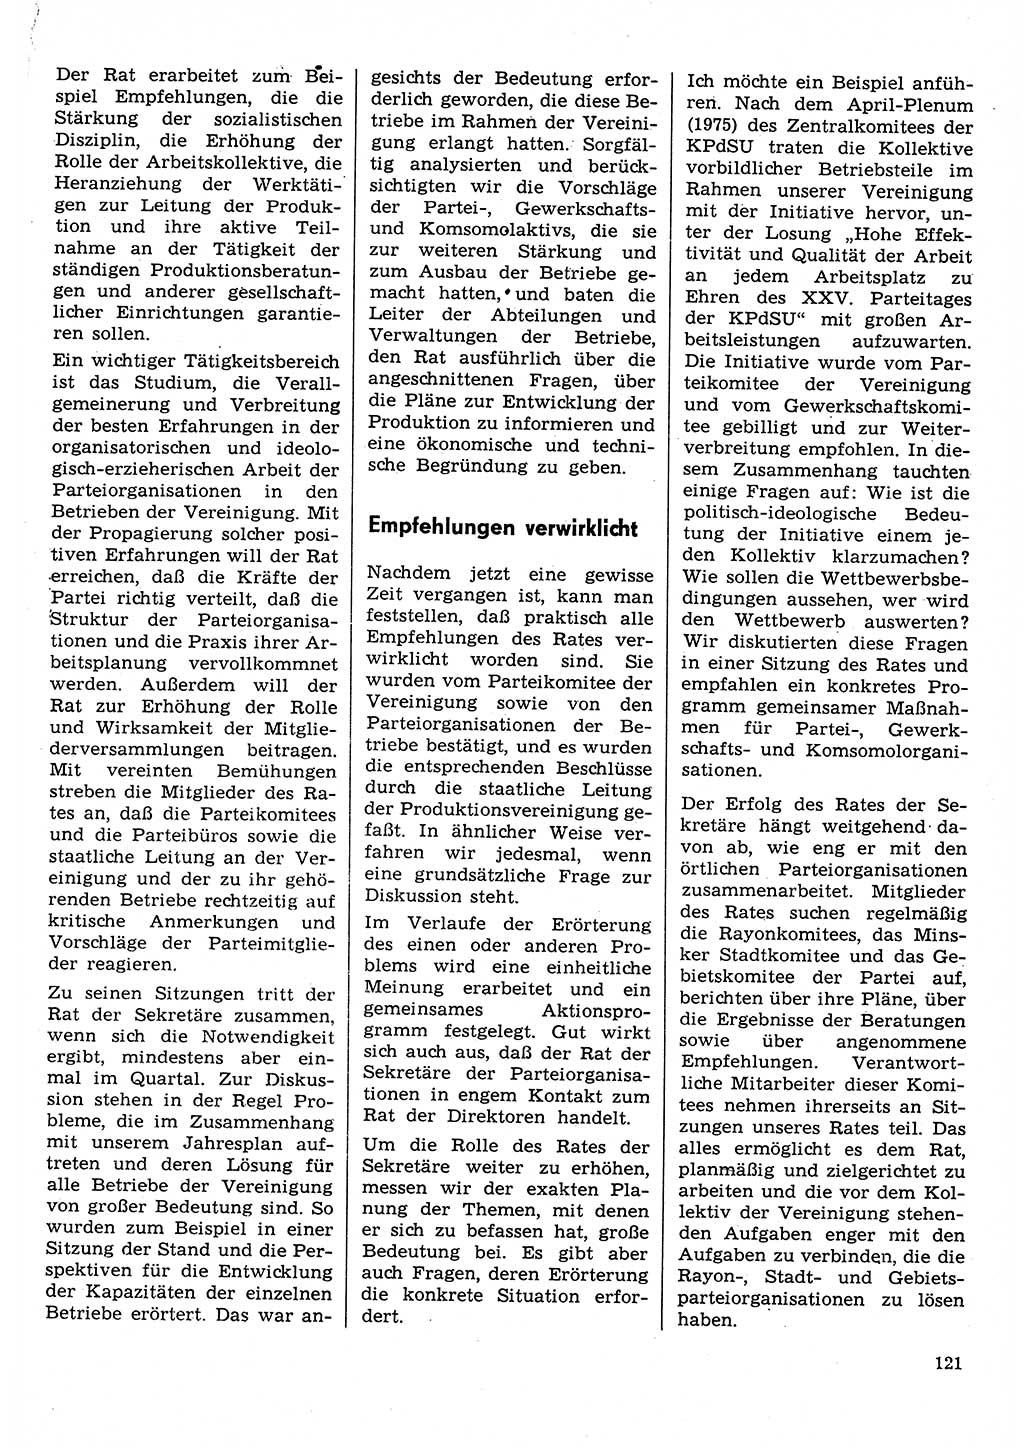 Neuer Weg (NW), Organ des Zentralkomitees (ZK) der SED (Sozialistische Einheitspartei Deutschlands) für Fragen des Parteilebens, 31. Jahrgang [Deutsche Demokratische Republik (DDR)] 1976, Seite 121 (NW ZK SED DDR 1976, S. 121)